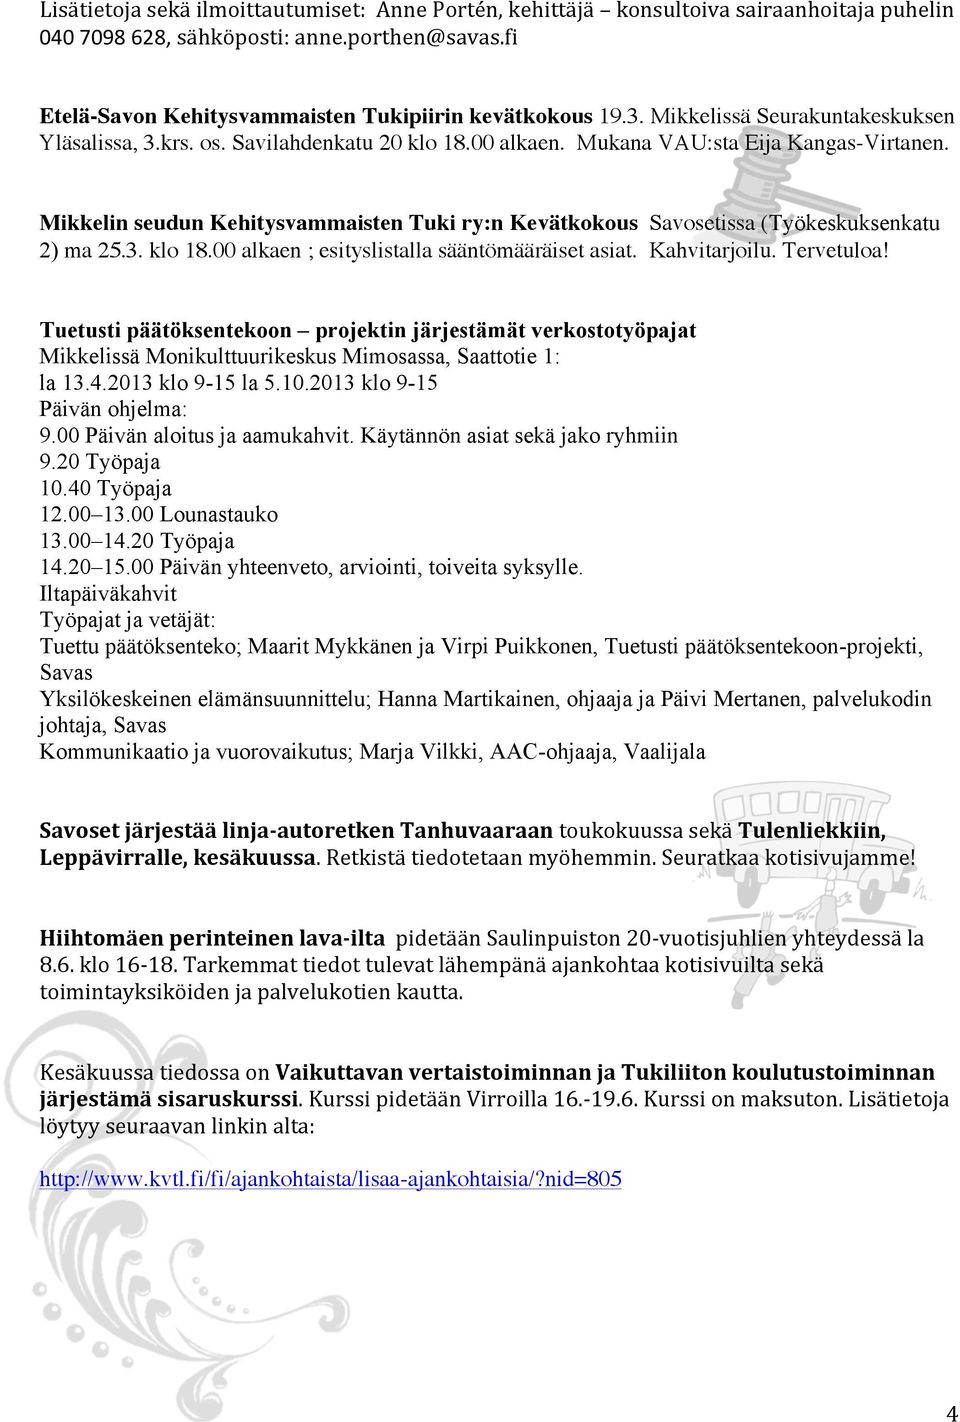 Mikkelin seudun Kehitysvammaisten Tuki ry:n Kevätkokous Savosetissa (Työkeskuksenkatu 2) ma 25.3. klo 18.00 alkaen ; esityslistalla sääntömääräiset asiat. Kahvitarjoilu. Tervetuloa!